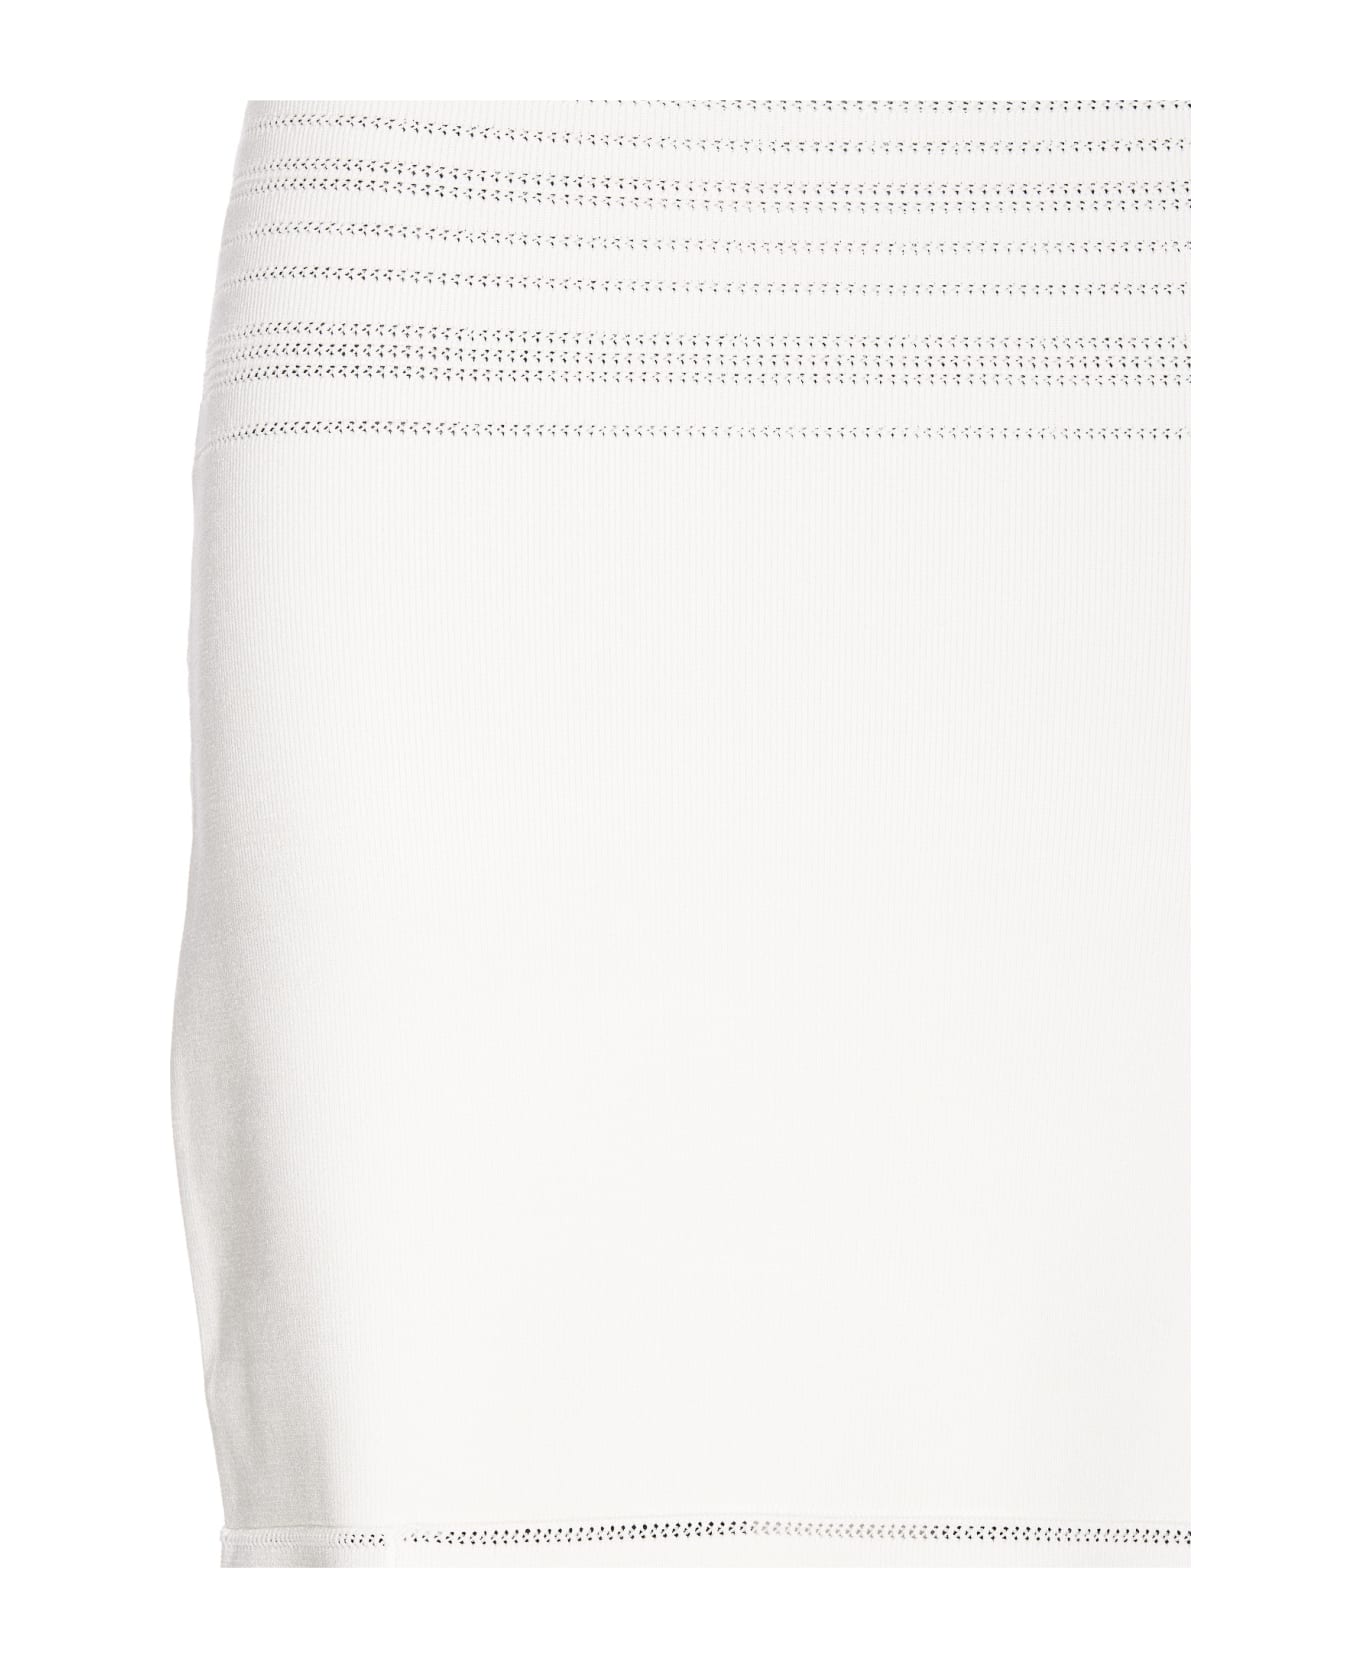 Victoria Beckham Midi Skirt - White